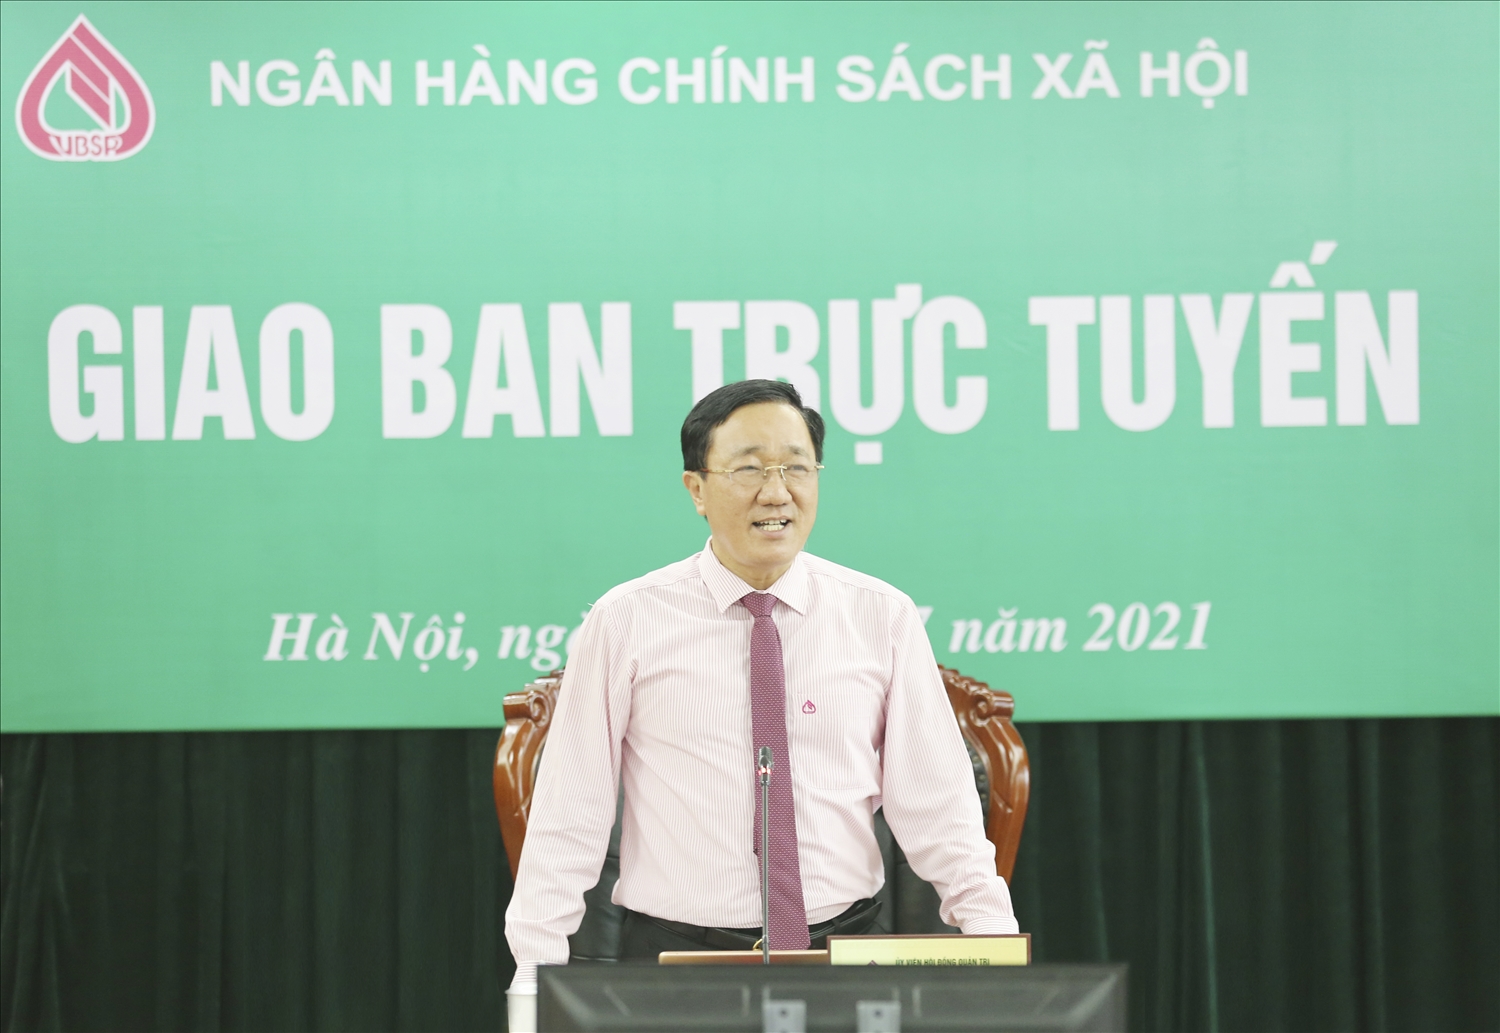 Tổng Giám đốc Dương Quyết Thắng phát biểu chỉ đạo tại buổi họp giao ban